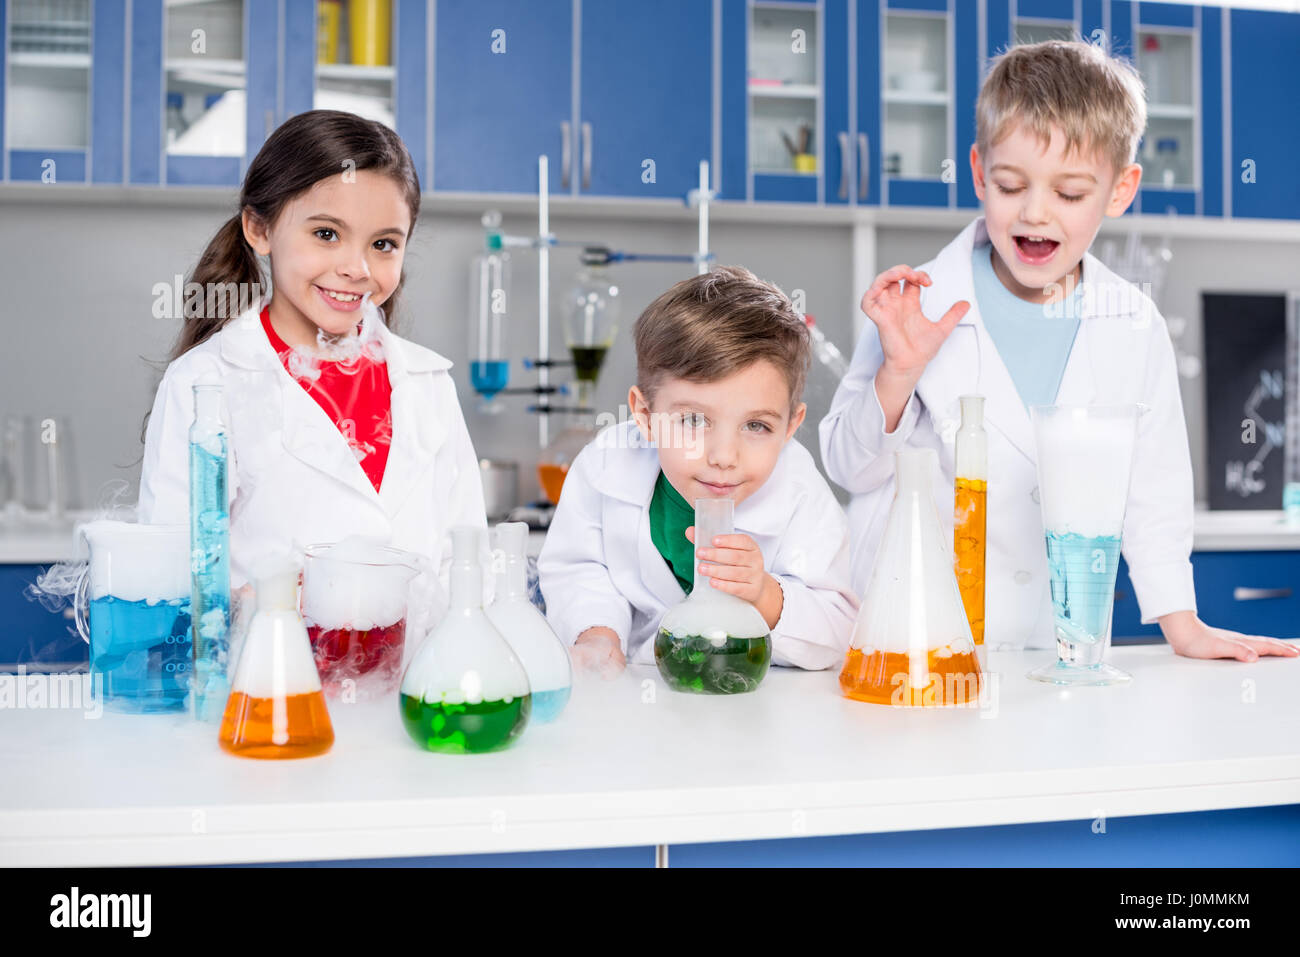 Drei Kinder in weißen Kitteln machen chemischen experimentieren im Labor Stockfoto